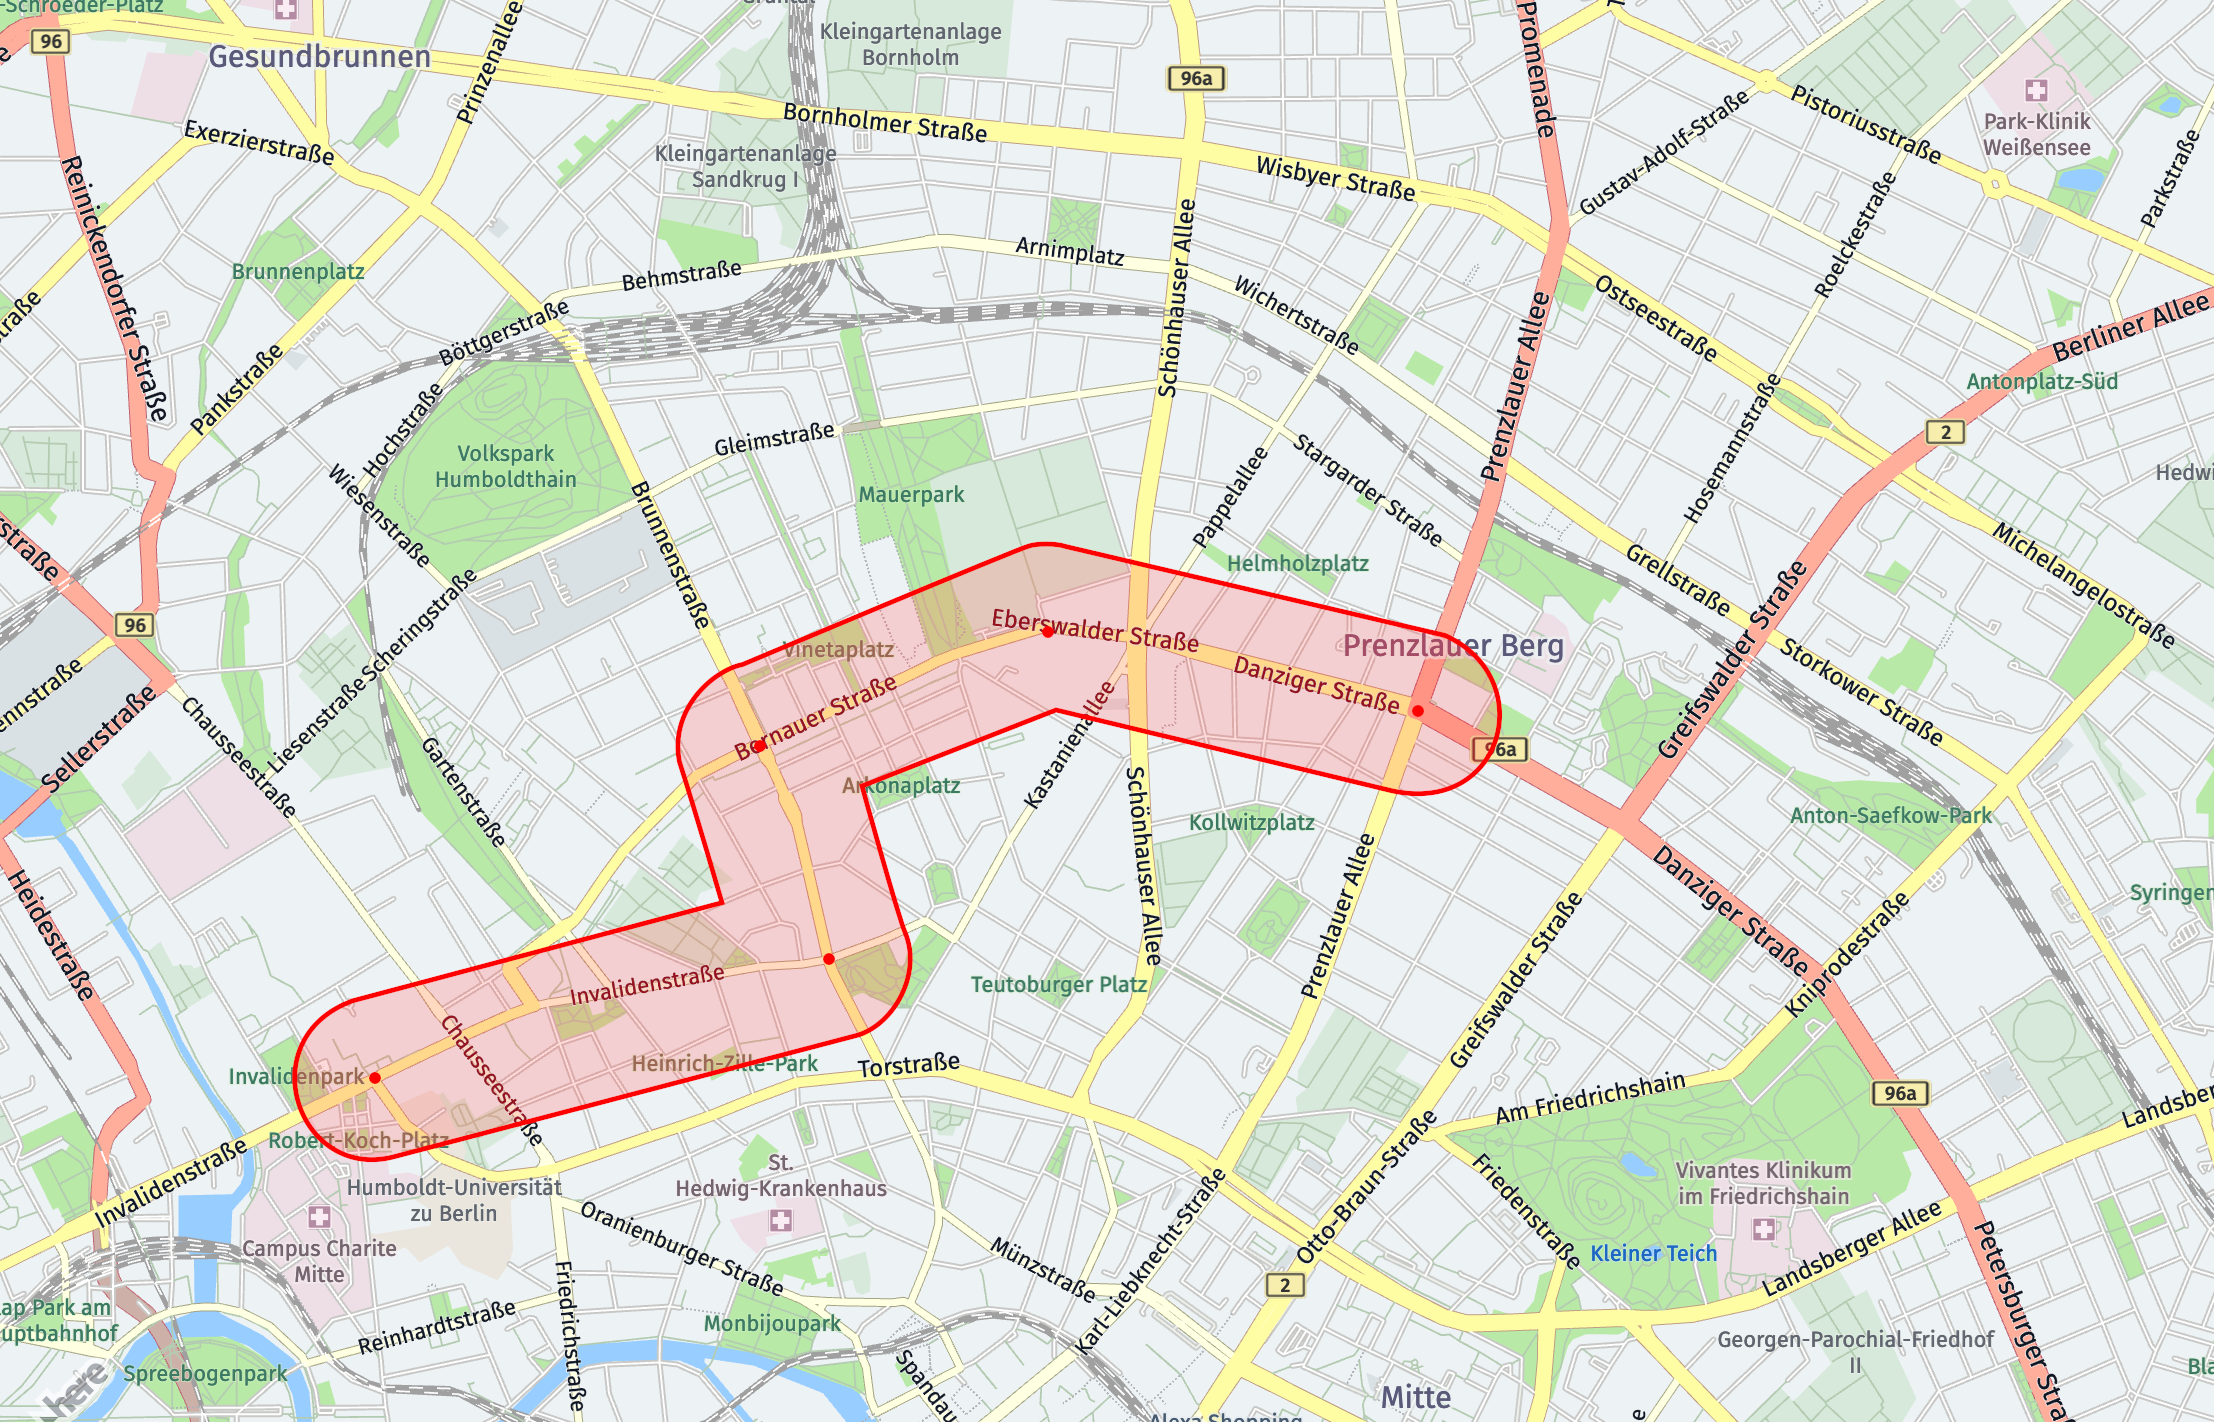 ミッテ（ベルリン）の地図上に配置された廊下フィルタの表現